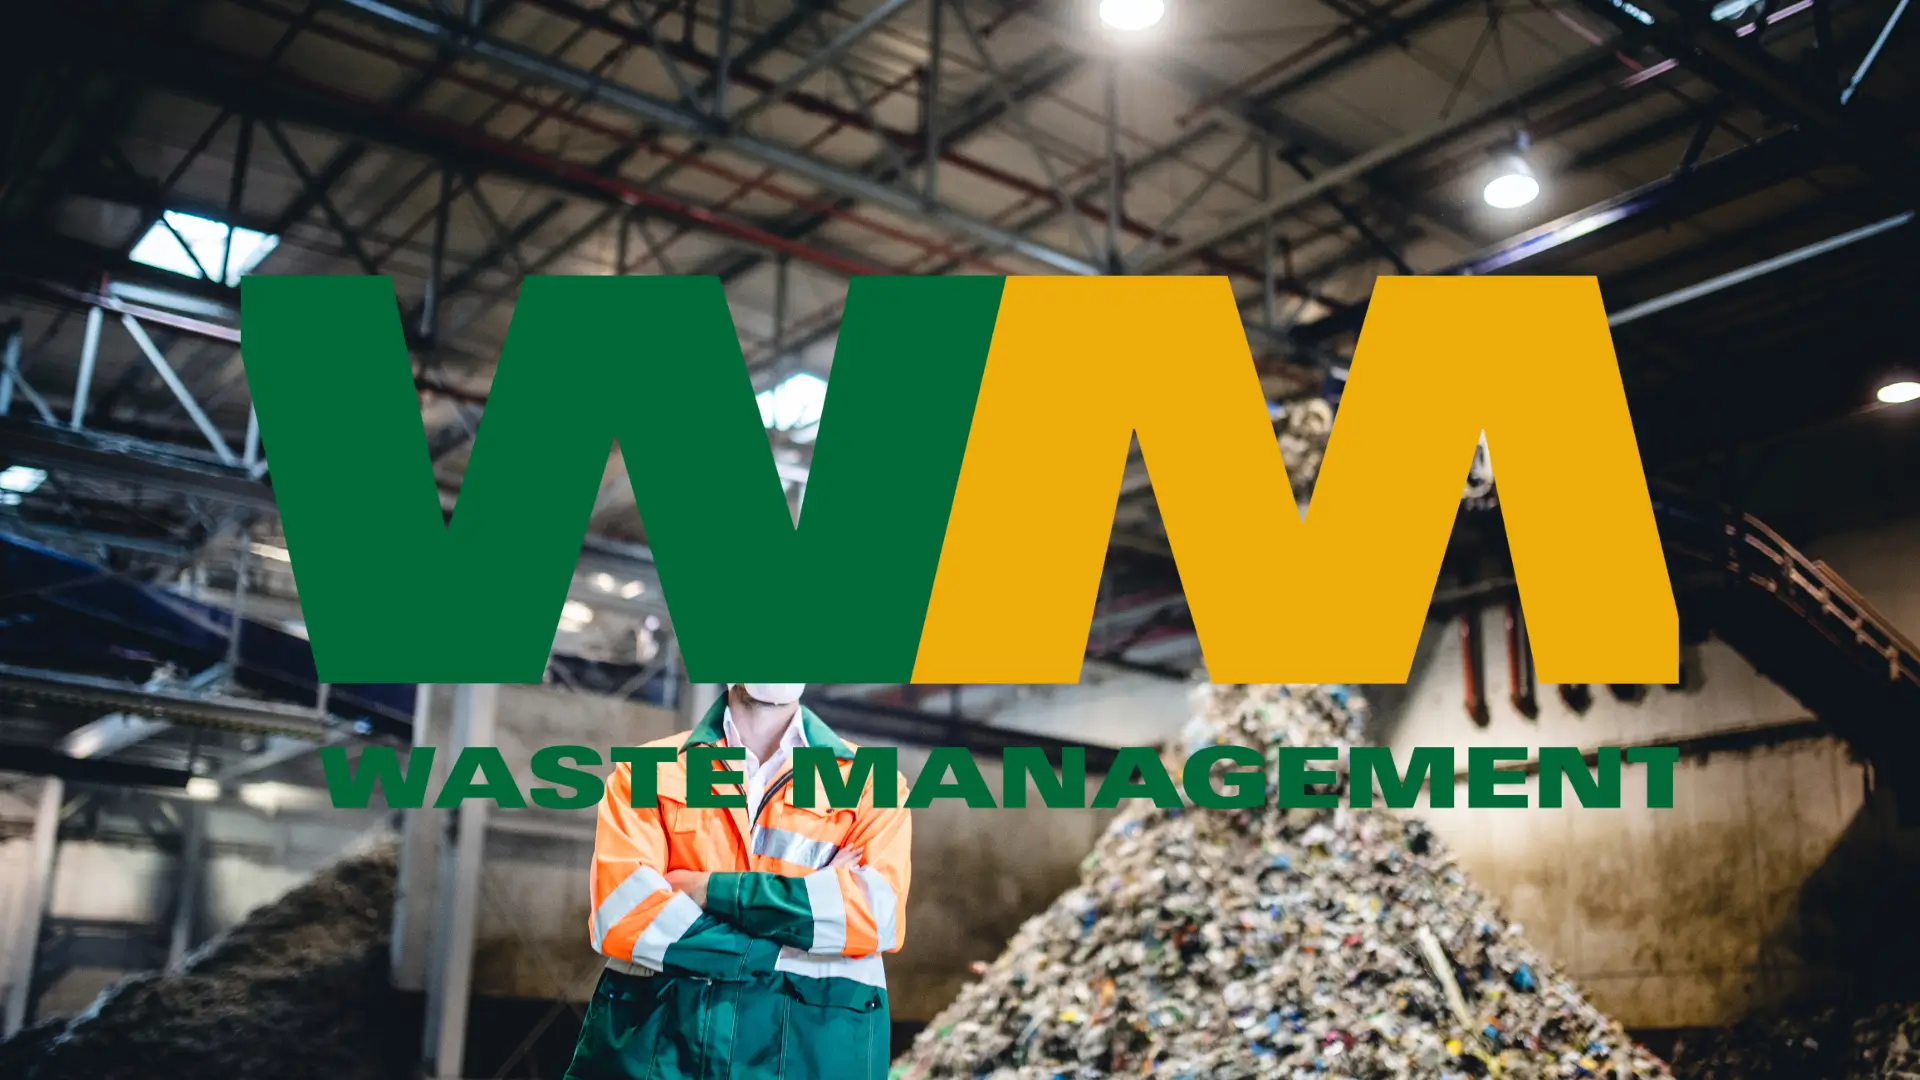 Waste Management Aktie Analyse – Abfall oder Anlage?